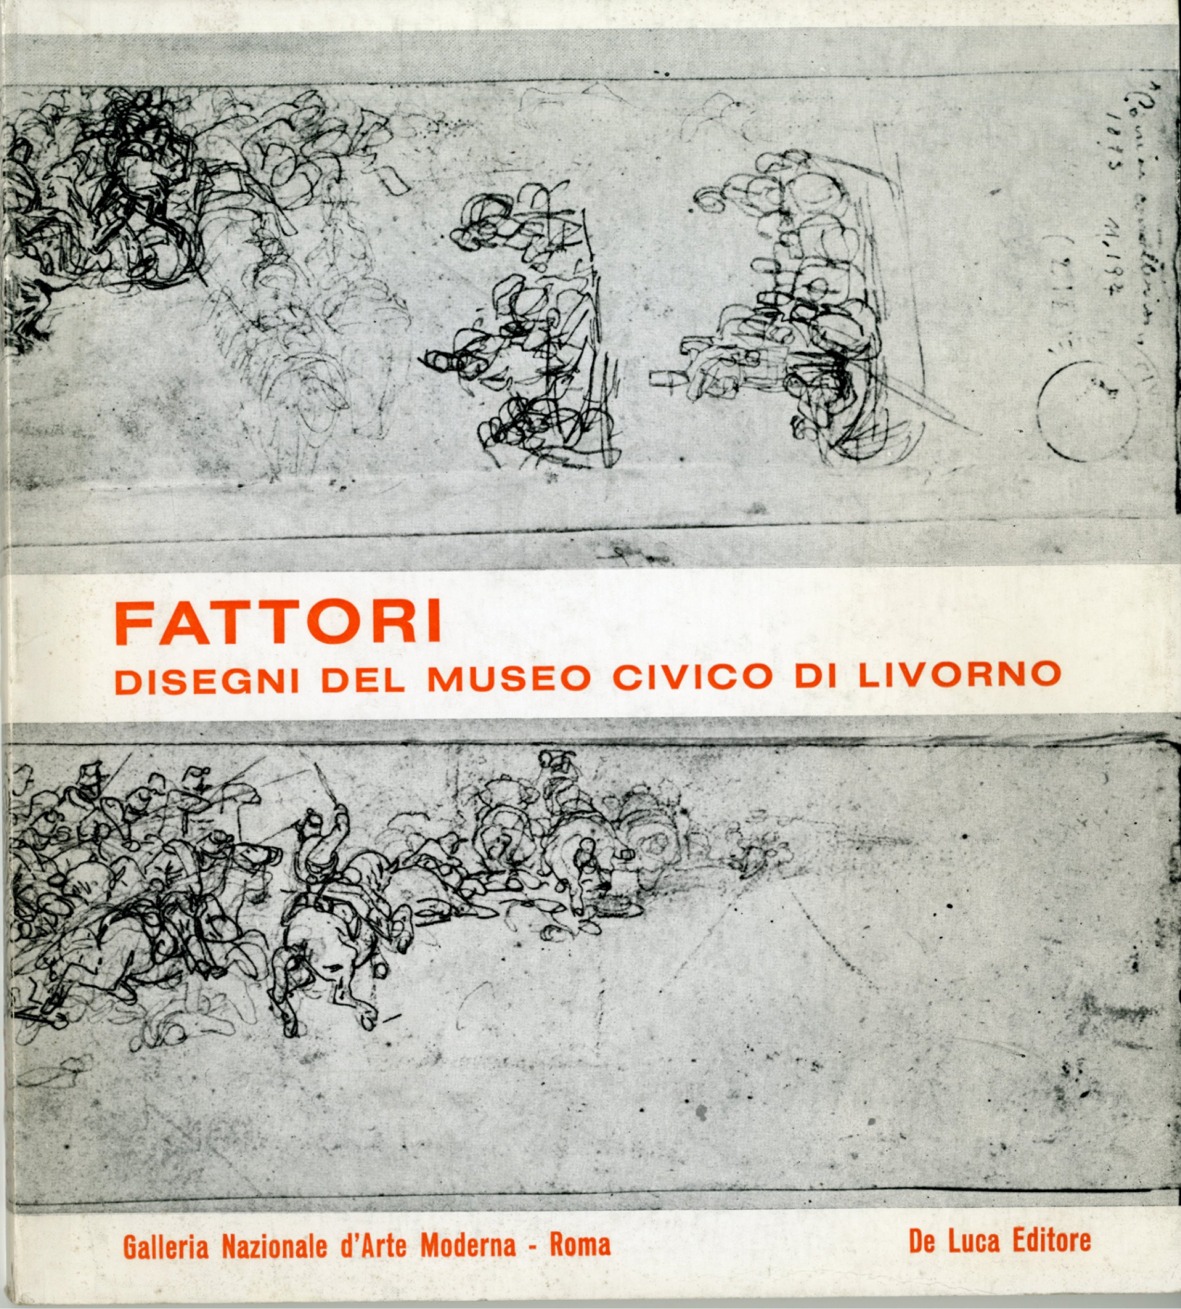 Fattori disegni del Museo civico di Livorno